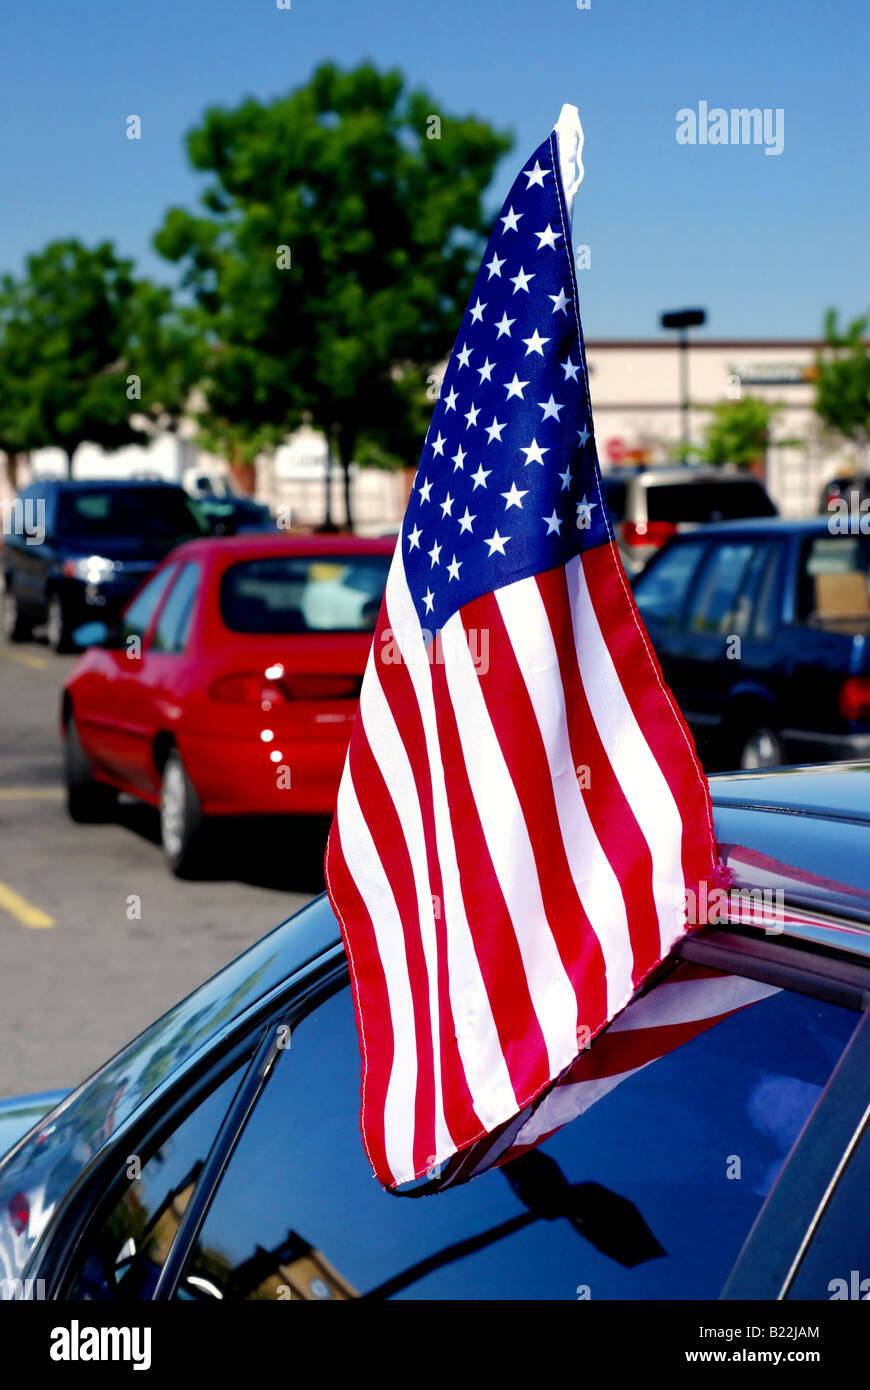 Eine amerikanische Flagge, die in einem Autofenster eingefügt